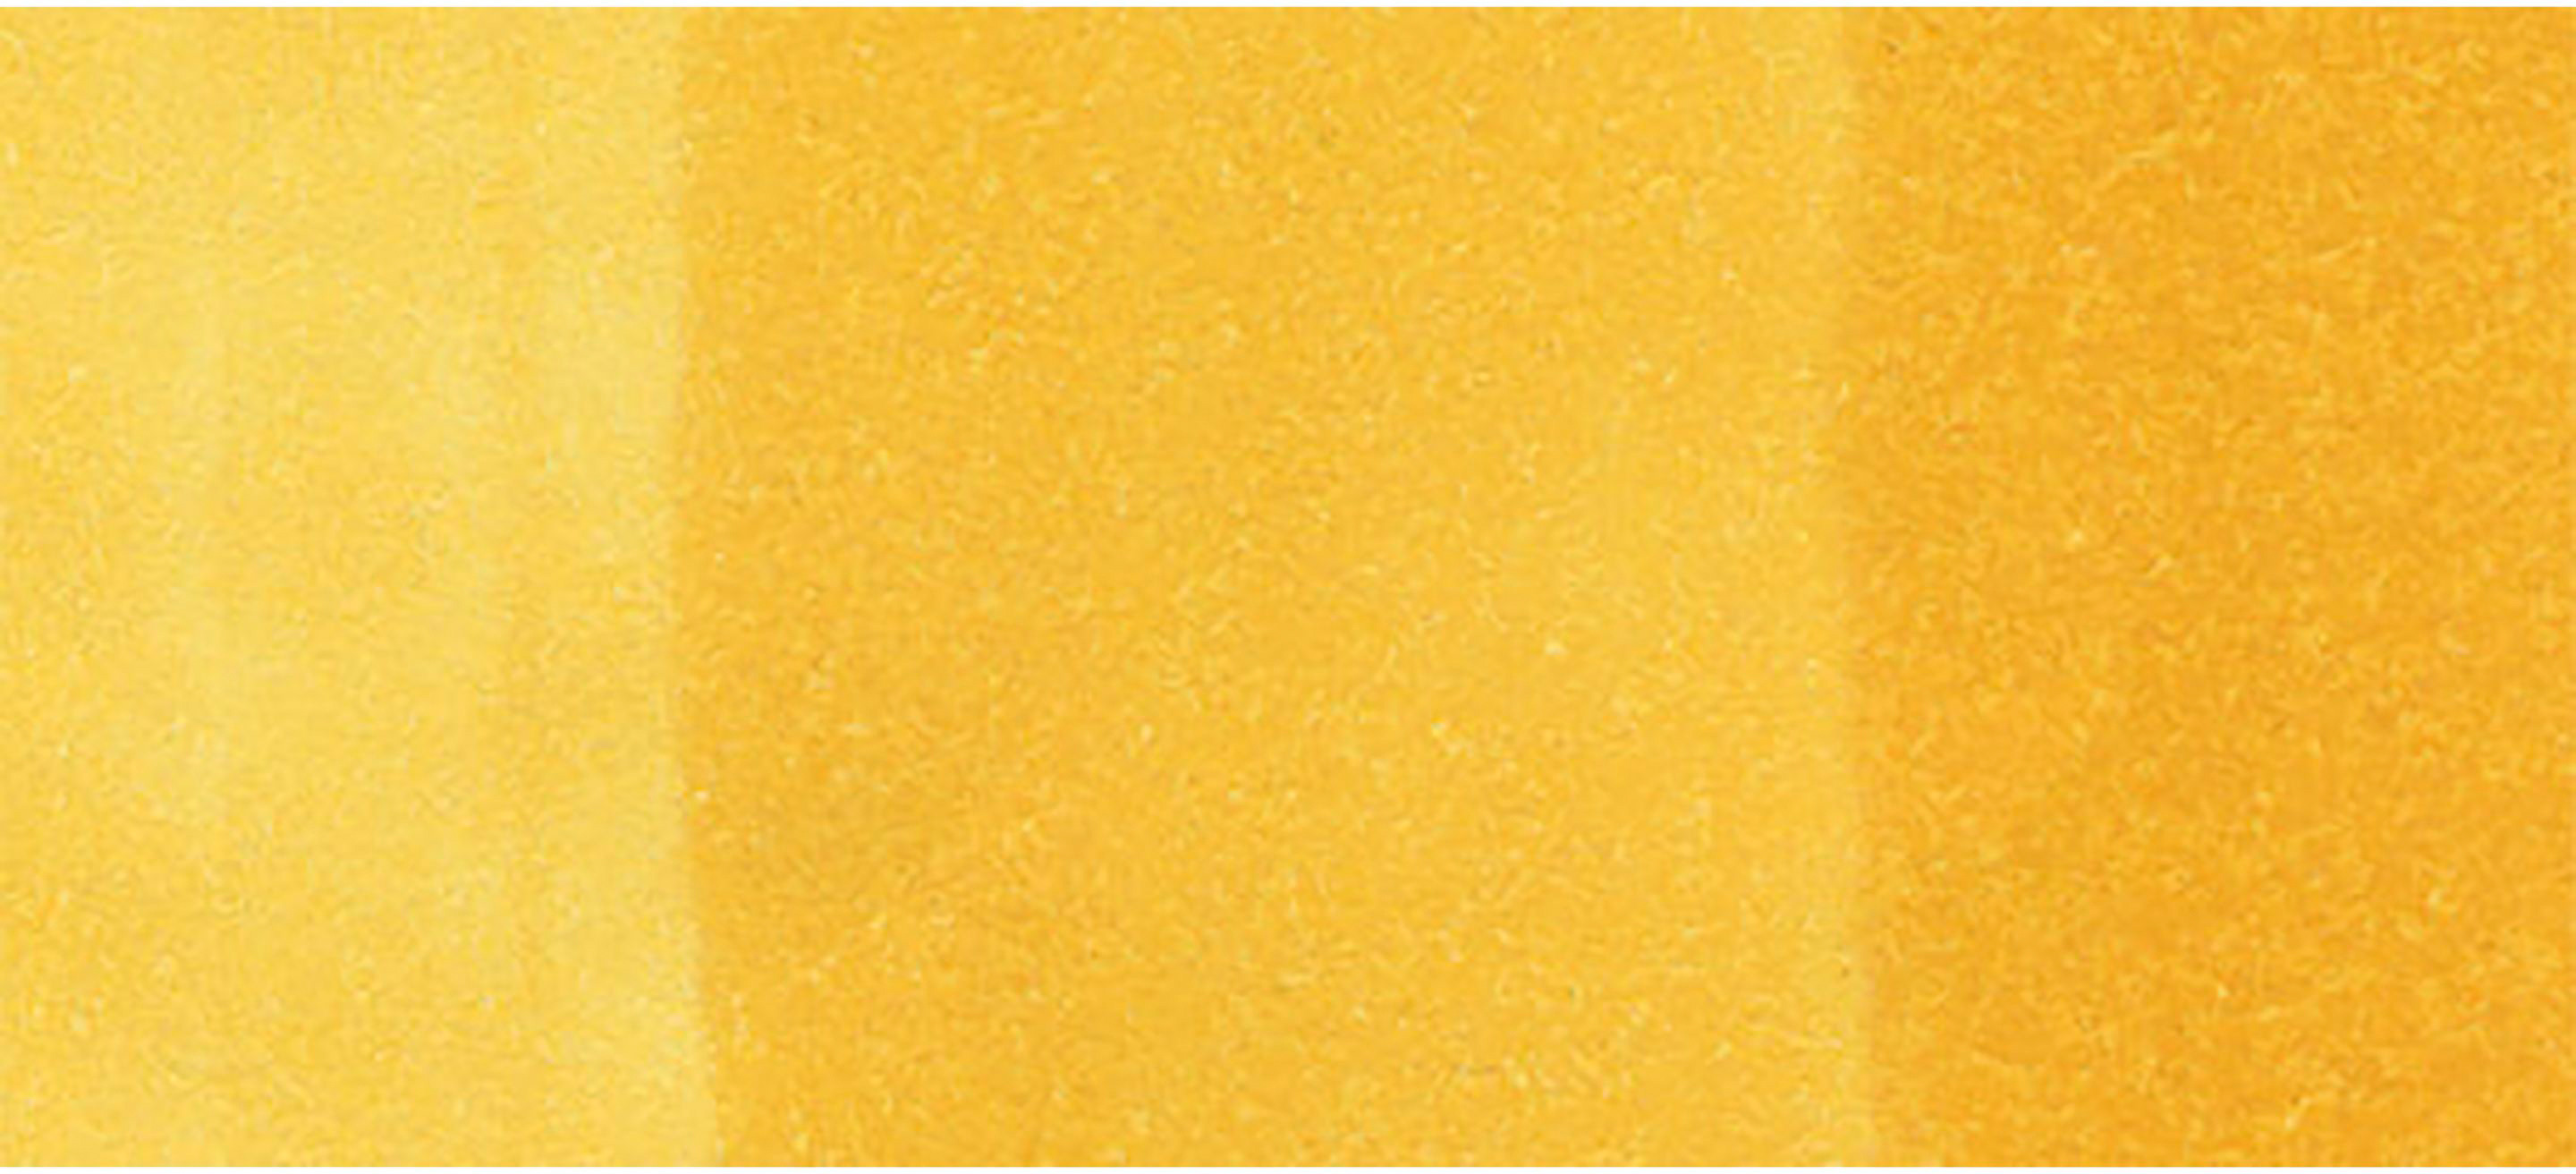 COPIC Marker Sketch 2107534 Y15 - Cadmium Yellow